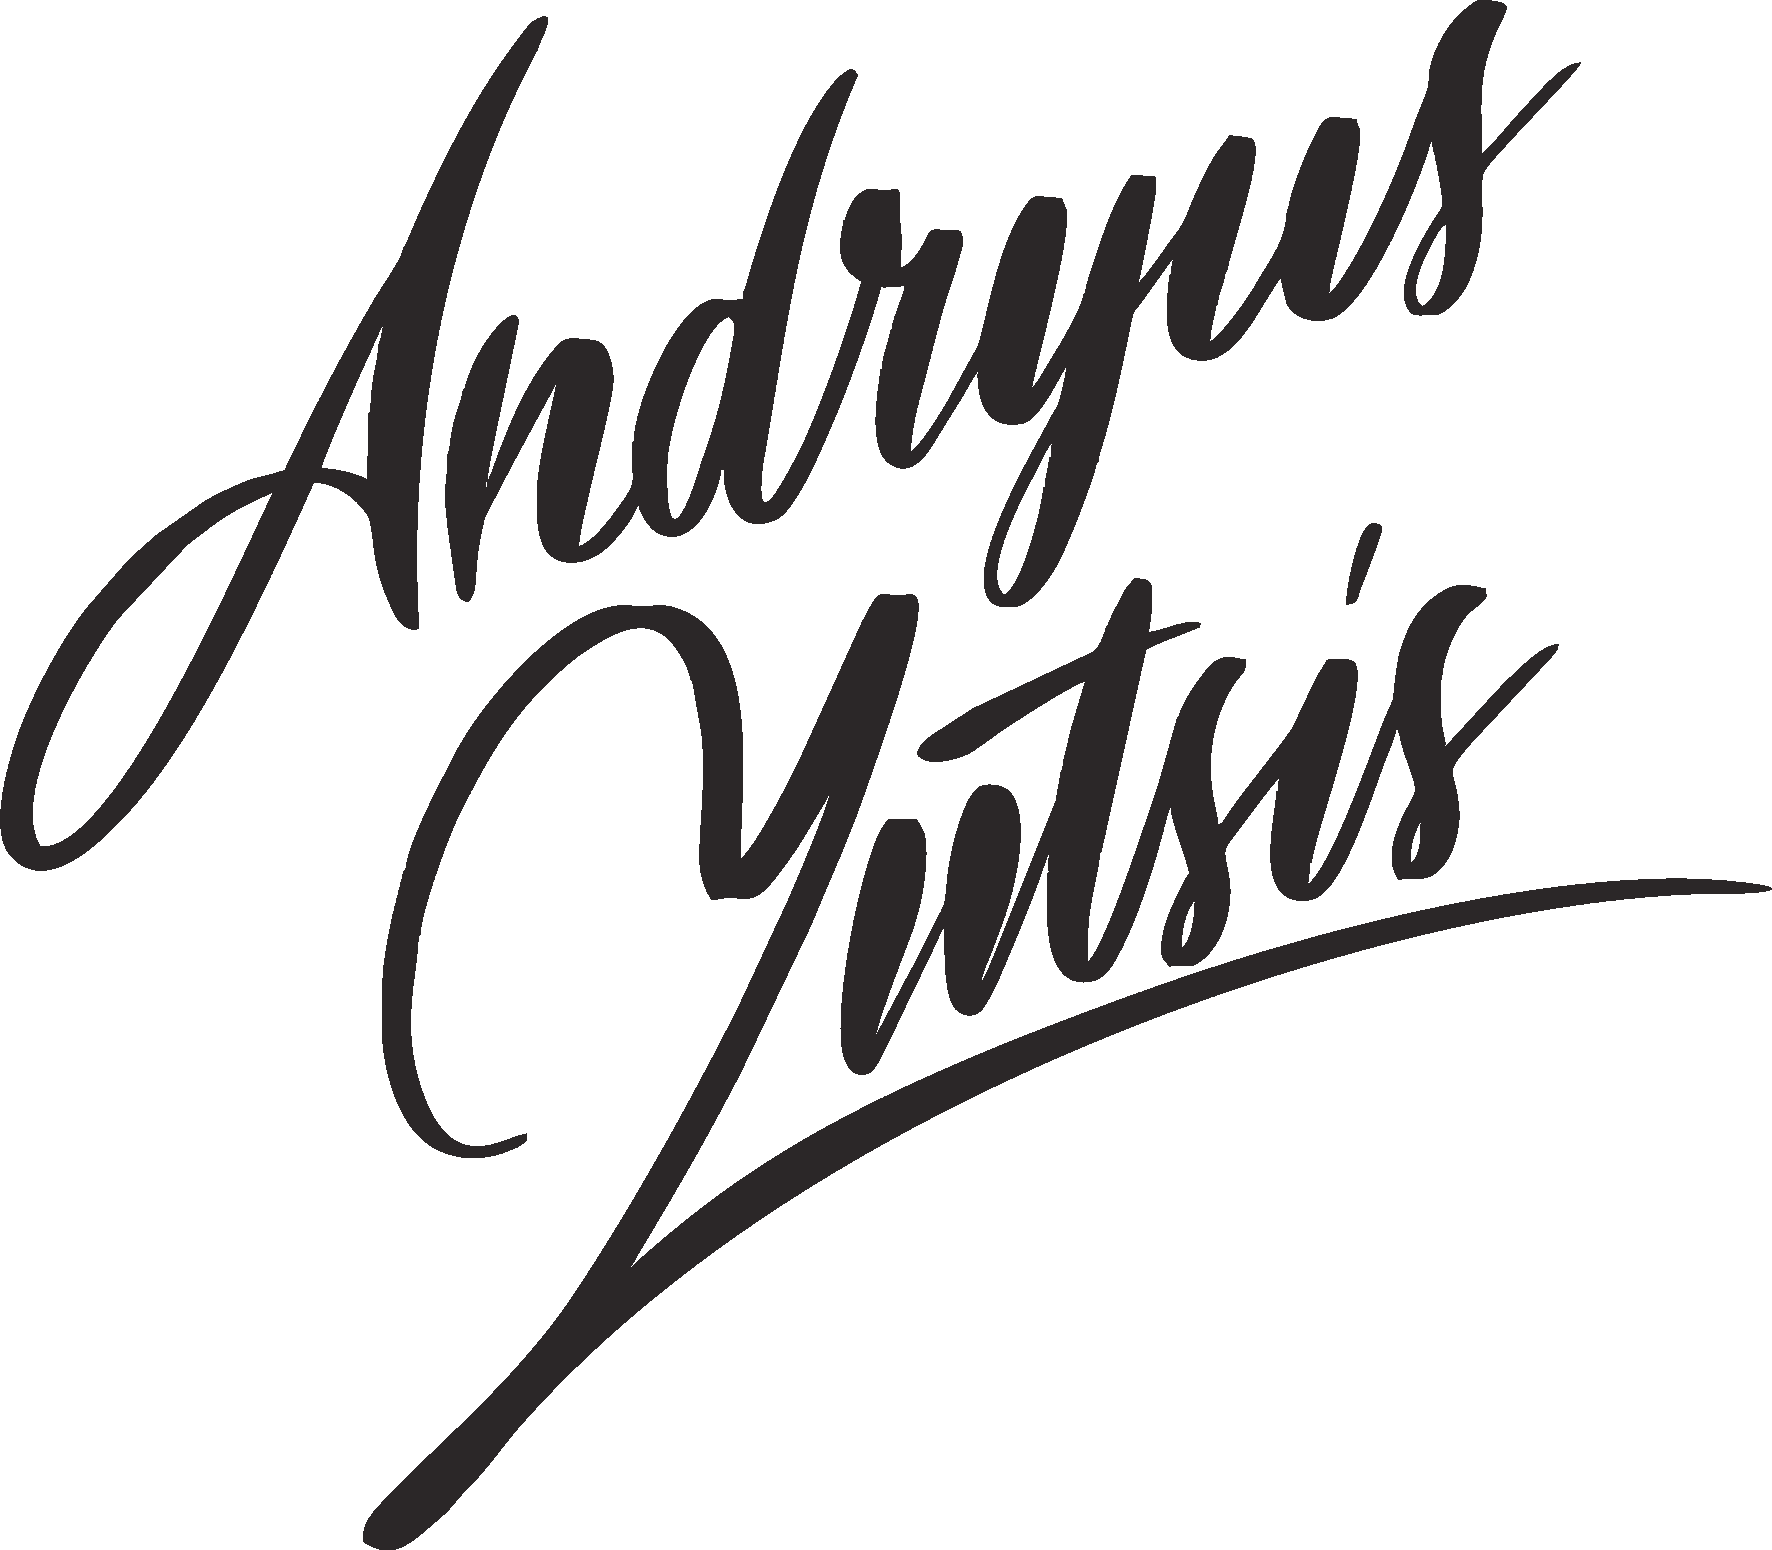 Andryus Yutsis